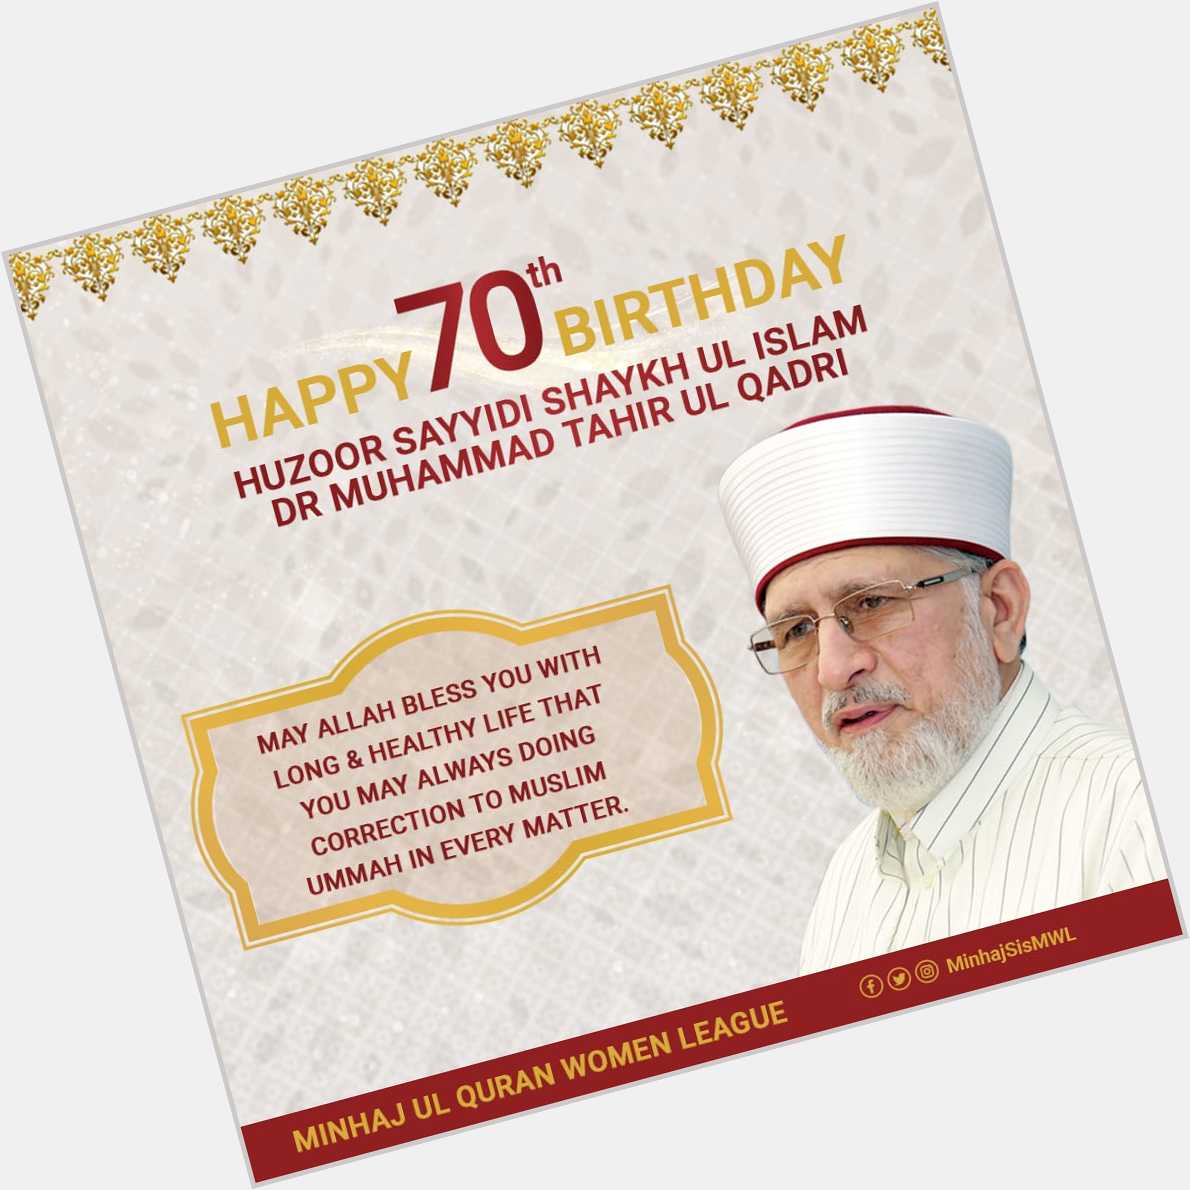 Happy 70th Birthday Huzoor Sayyidi Shykh ul Islam Dr. Muhammad Tahir ul Qadri!  